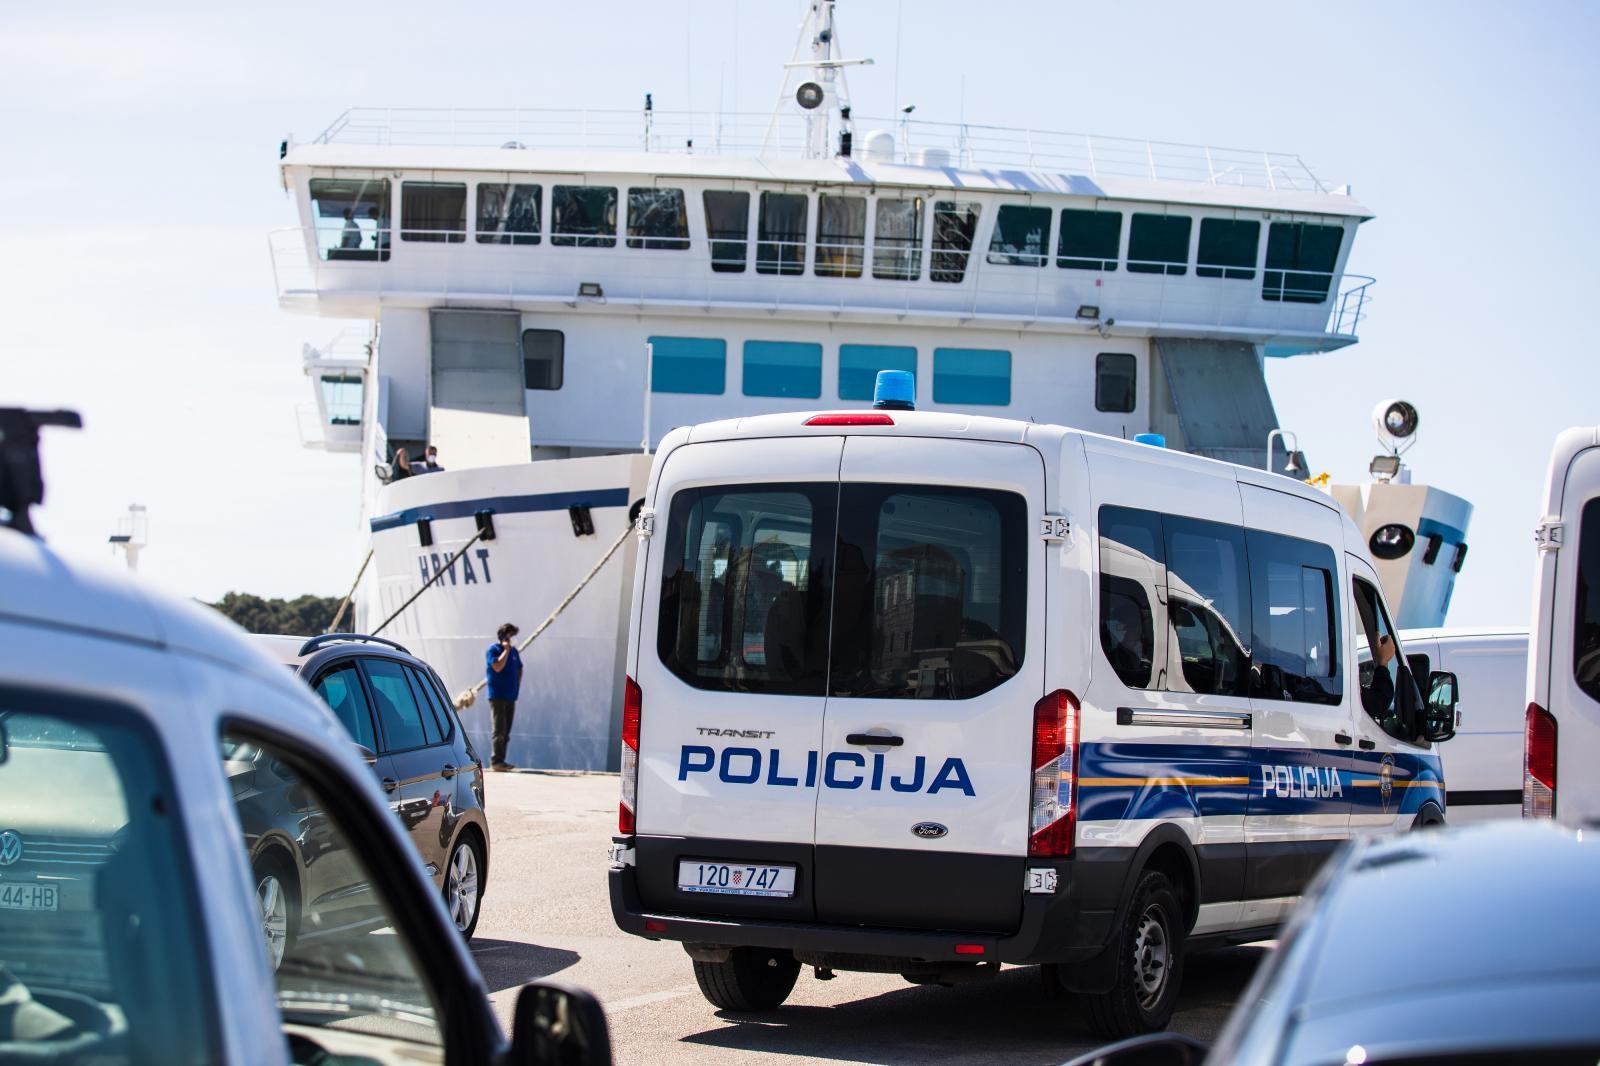 09.05.2020., Supetar, Brac - Policija kontrolira putnike ispred trajekta prema Splitu nakon sto je donesena odluka da se ne dopusta povratak na kopno nikome bez vazece propusnice.
Photo: Milan Sabic/PIXSELL